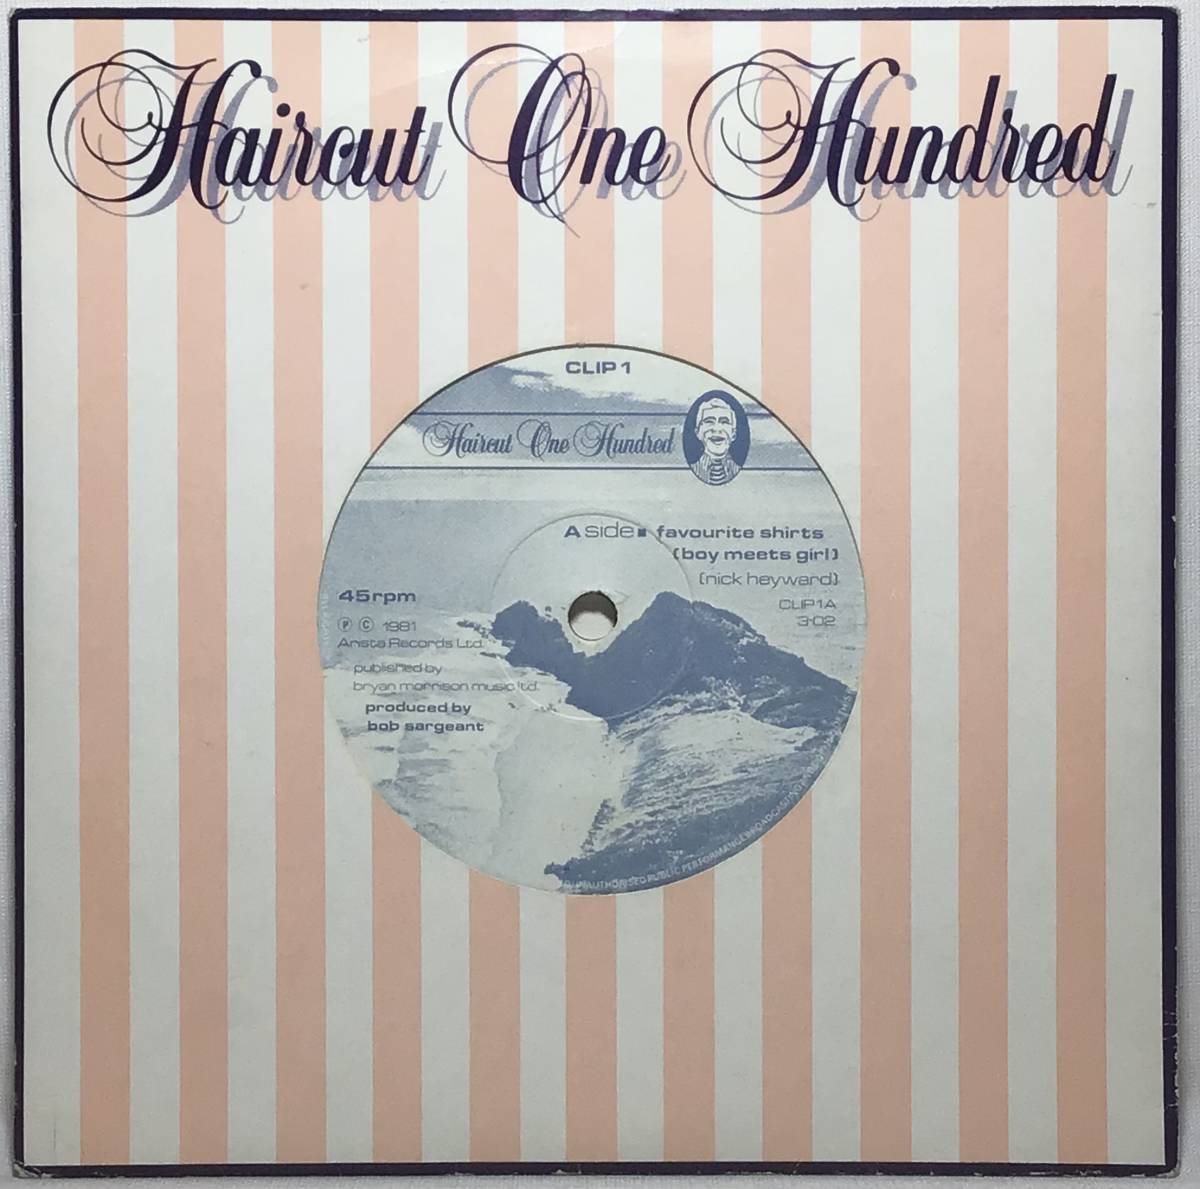 【英7】 HAIRCUT ONE HUNDRED / FAVOURITE SHIRTS / BOAT PARTY / TOWN HOUSE 刻印 1981 UK盤 7インチシングルレコード EP 45_画像1